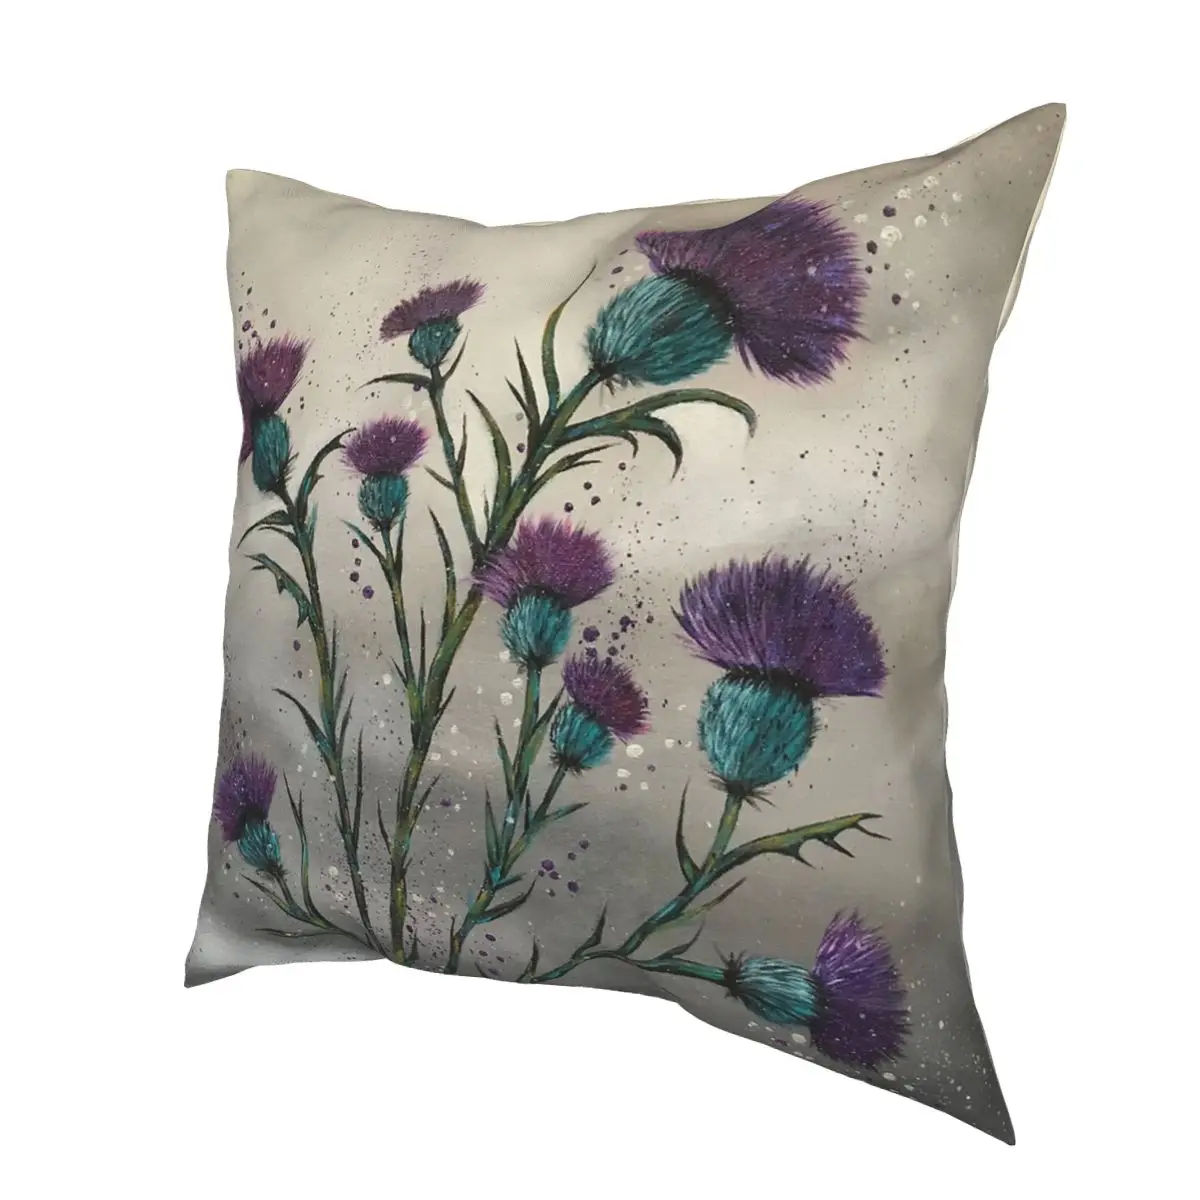 Шотландская традиционная фиолетовая подушка с цветком чертополоха из полиэстера, распечатанная молнией, декоративная наволочка для дивана.